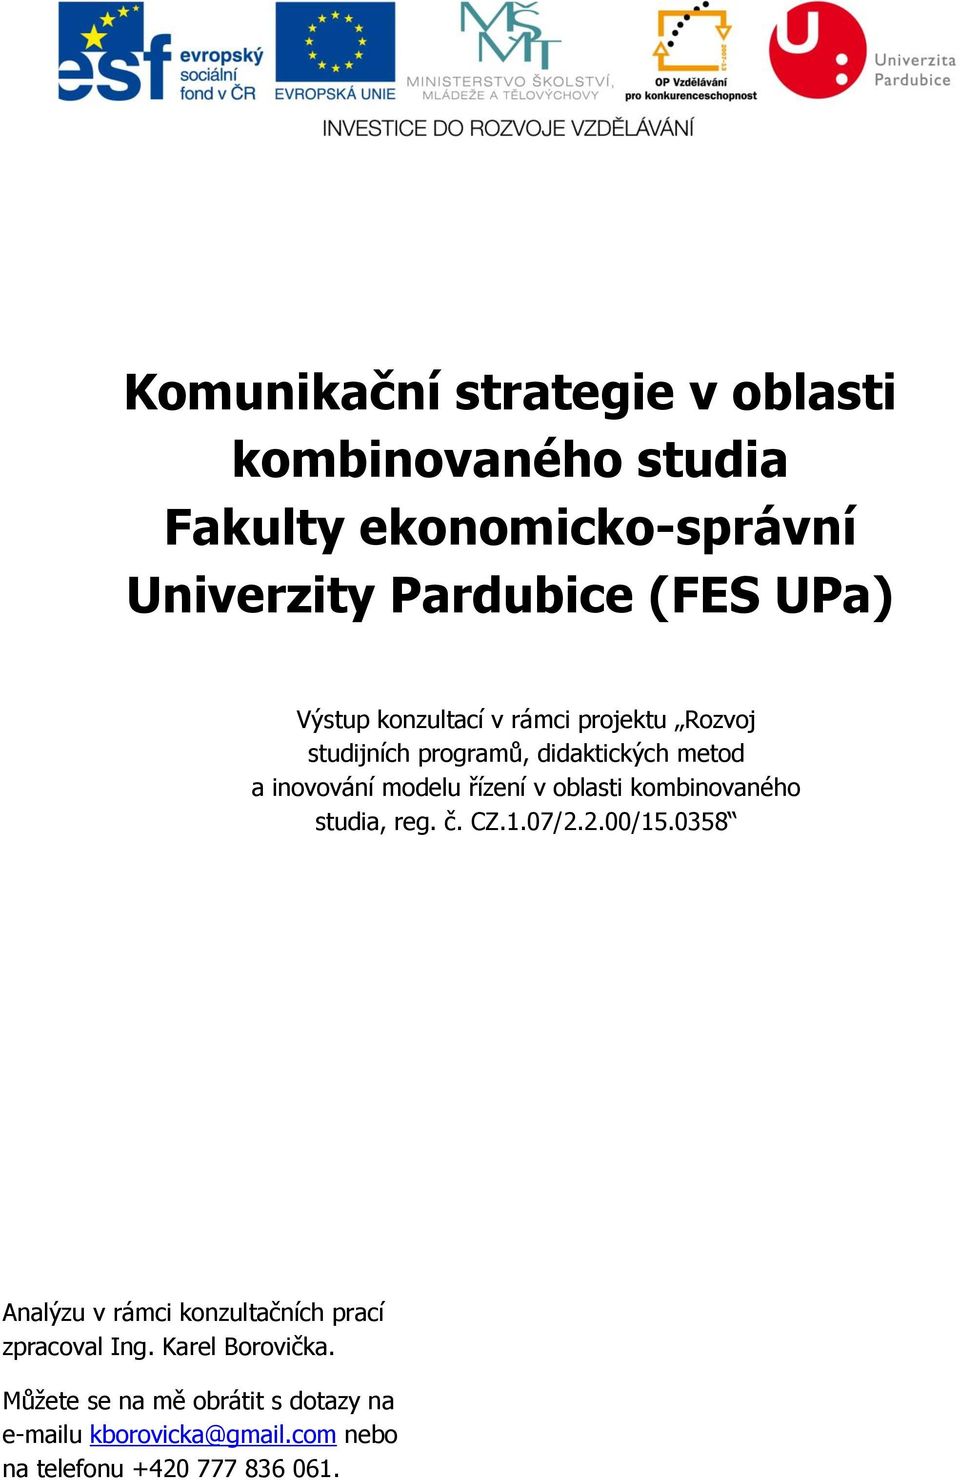 cz modelu řízení v oblasti kombinovaného studia, reg. č. CZ.1.07/2.2.00/15.